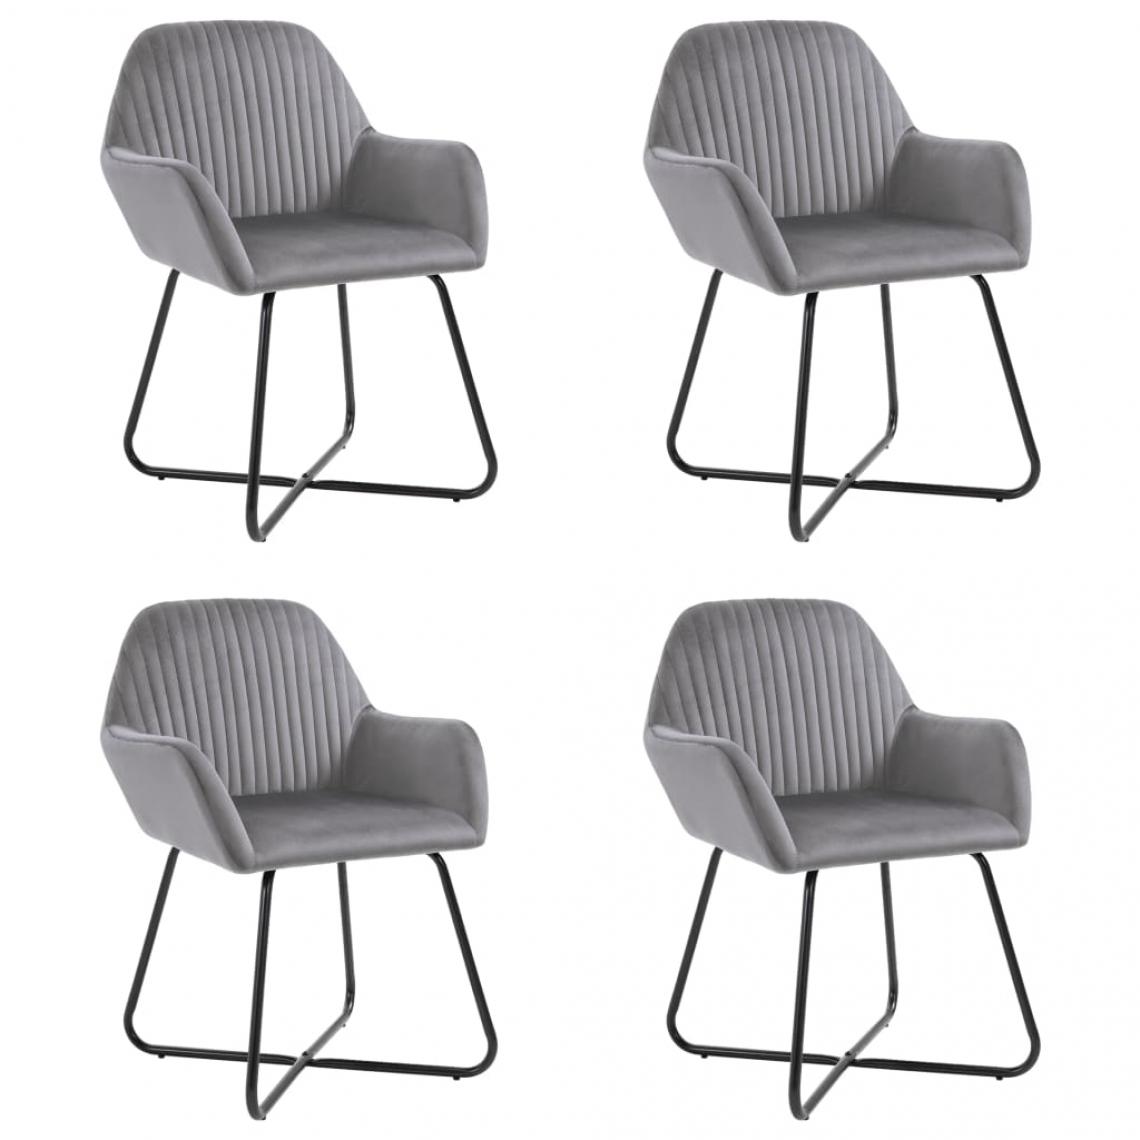 Decoshop26 - Lot de 4 chaises de salle à manger cuisine design moderne velours gris CDS021621 - Chaises